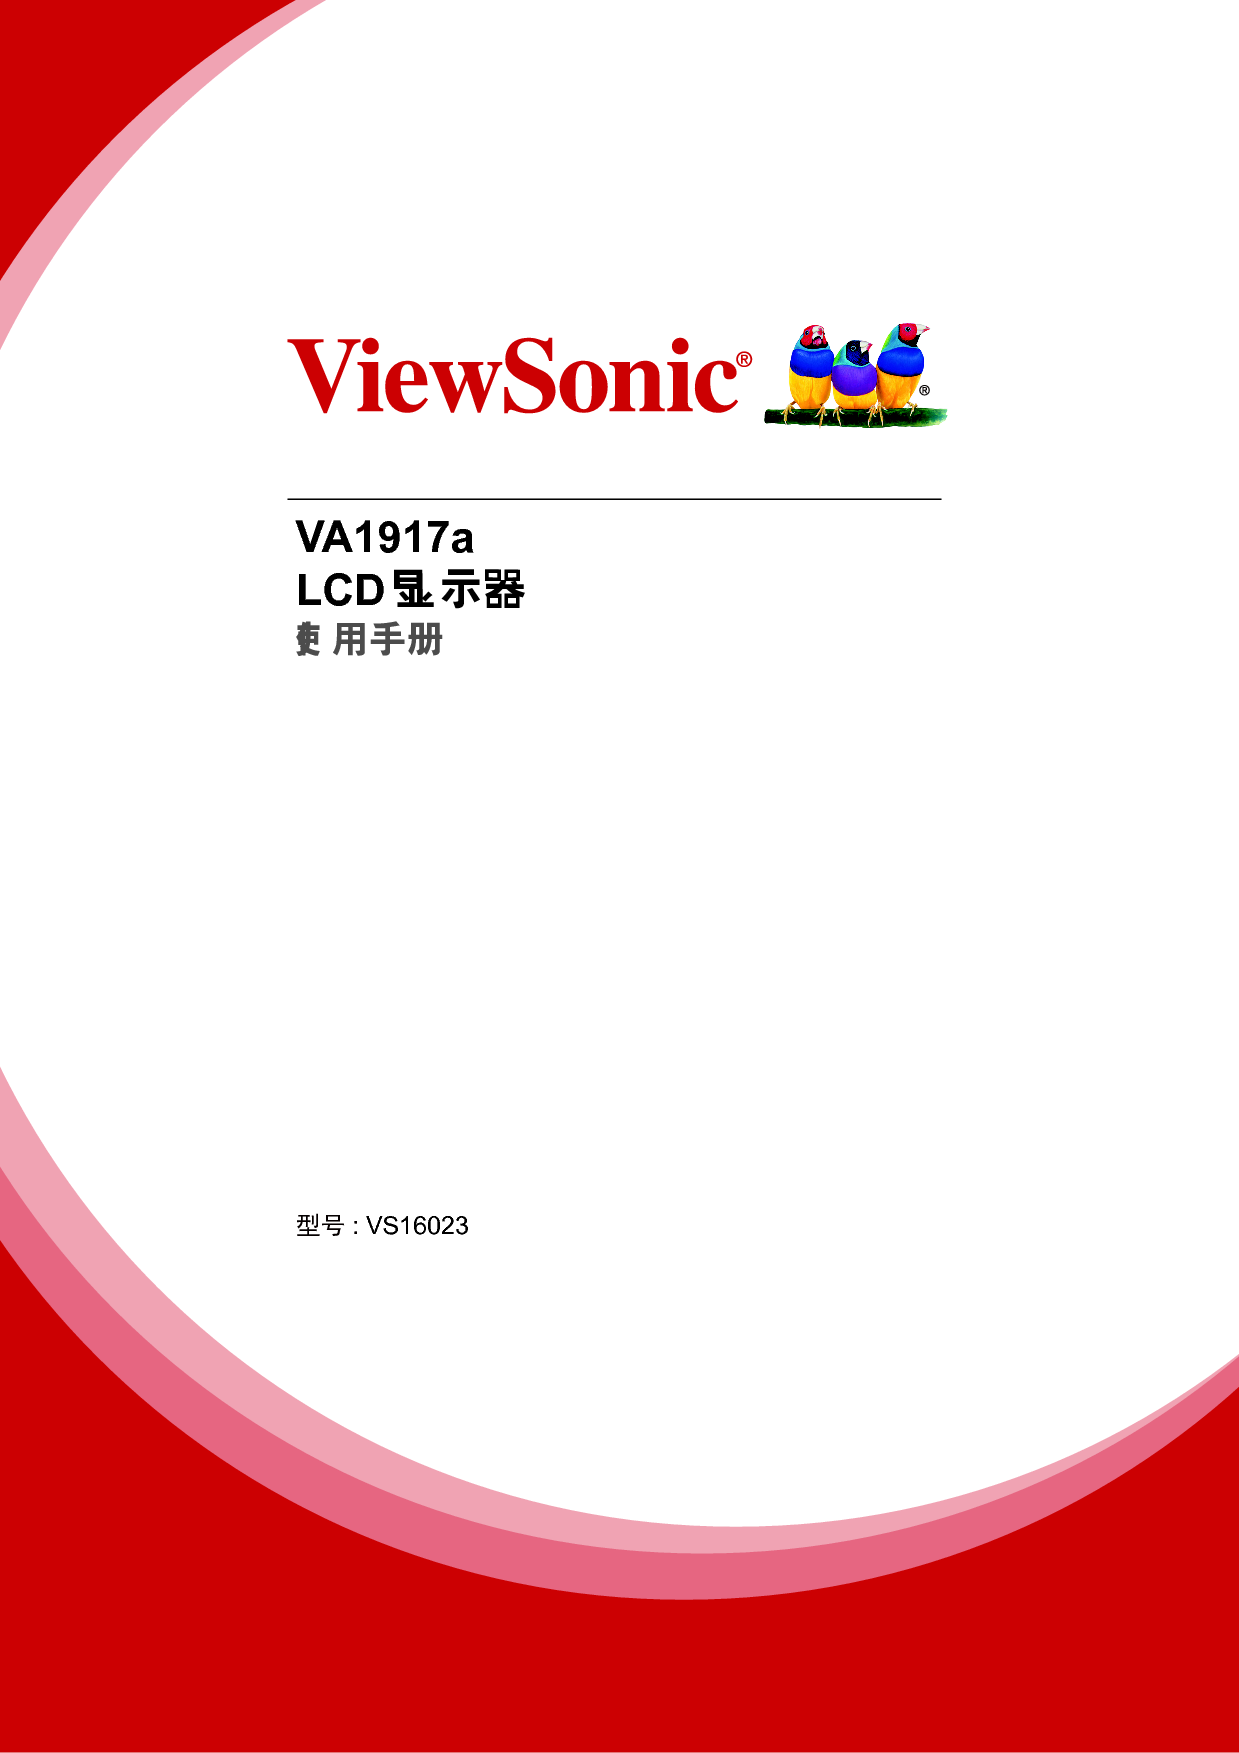 优派 ViewSonic VA1917a 使用手册 封面